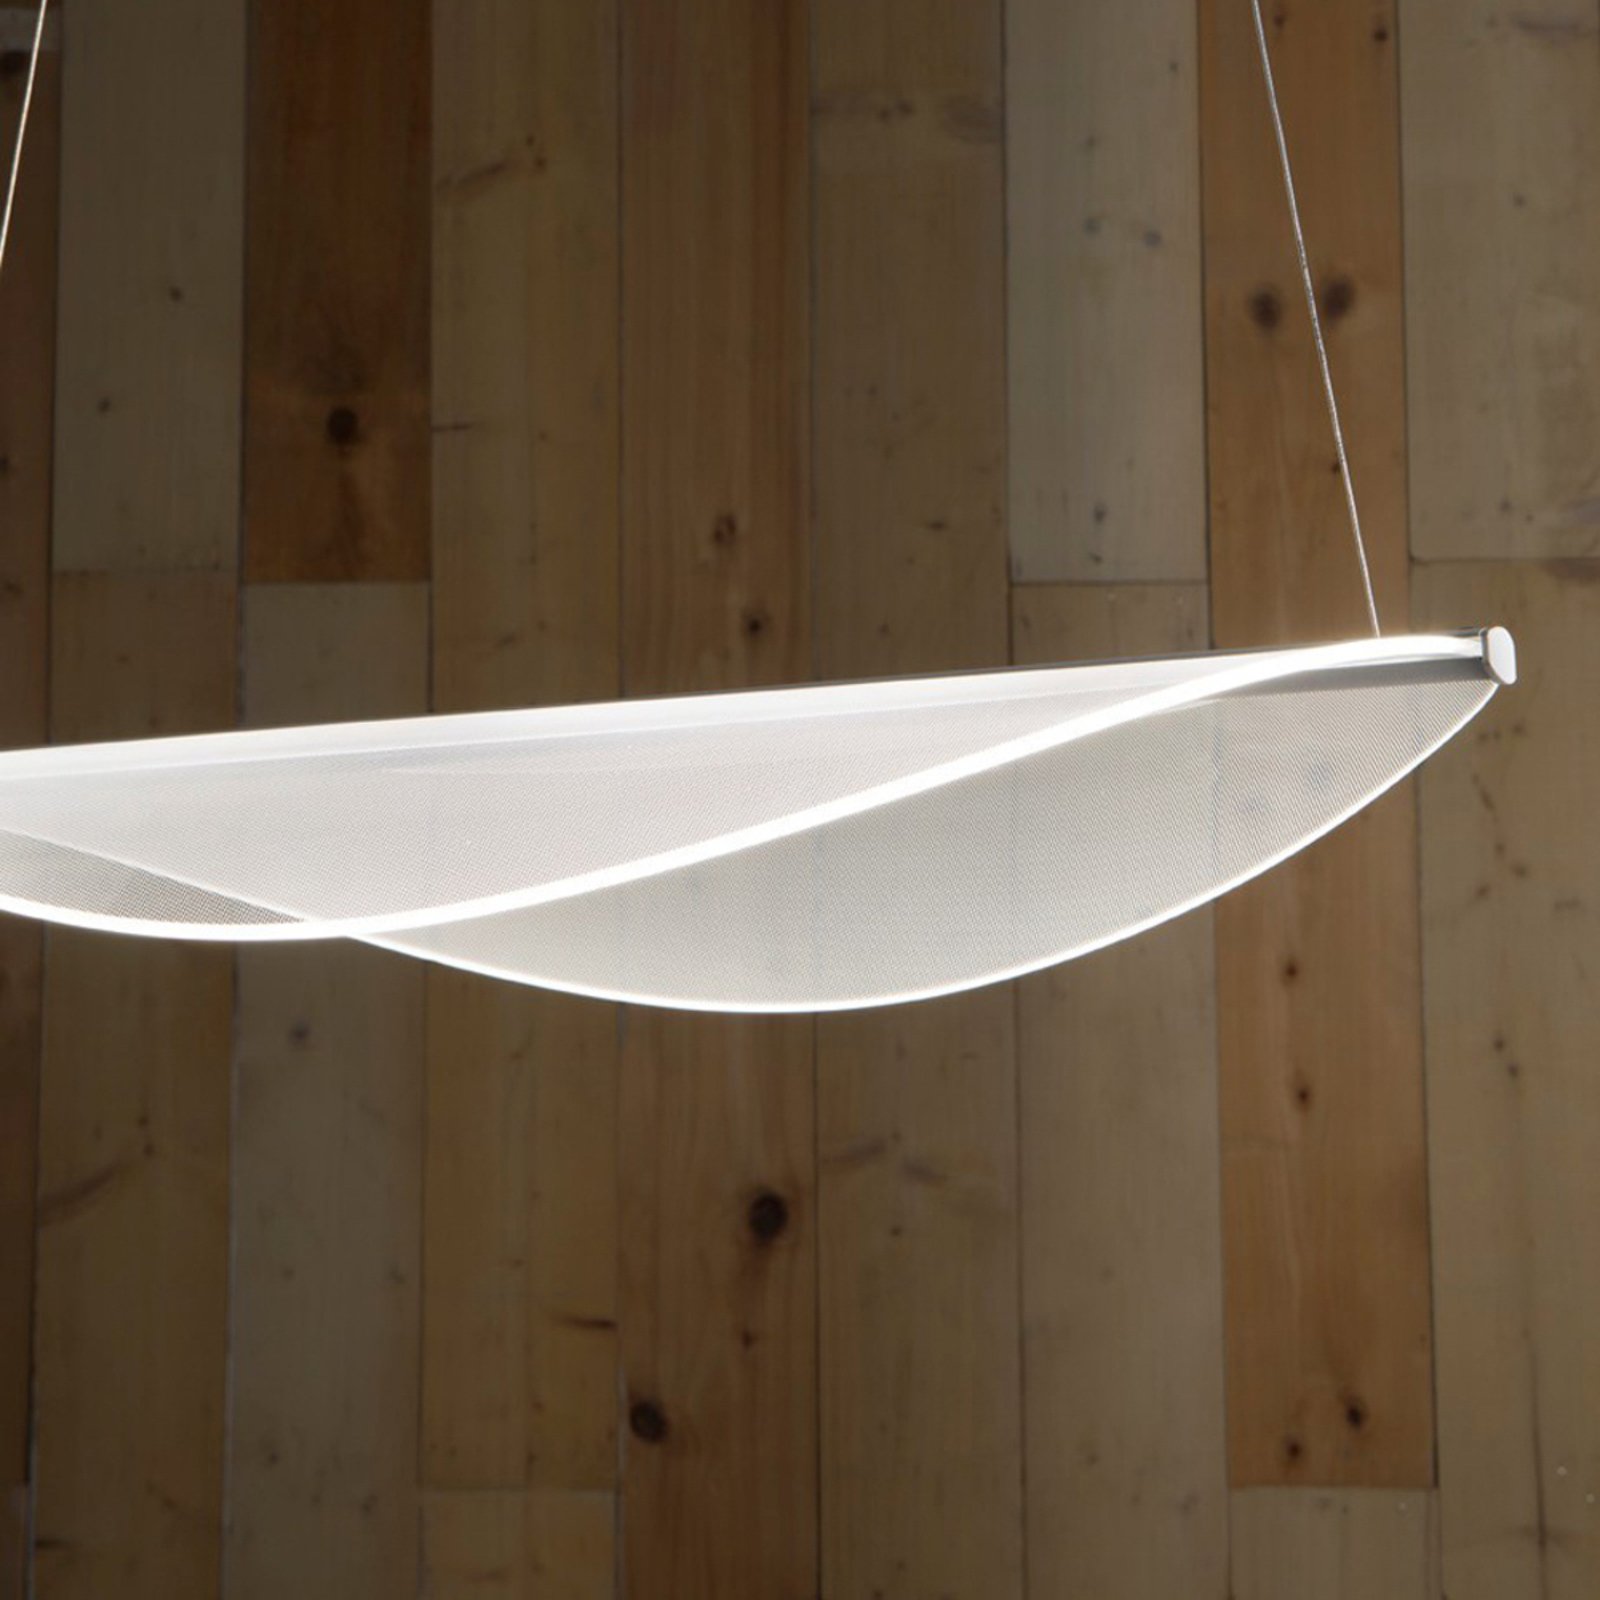 Stilnovo LED hanglamp wit lengte 53,6 cm